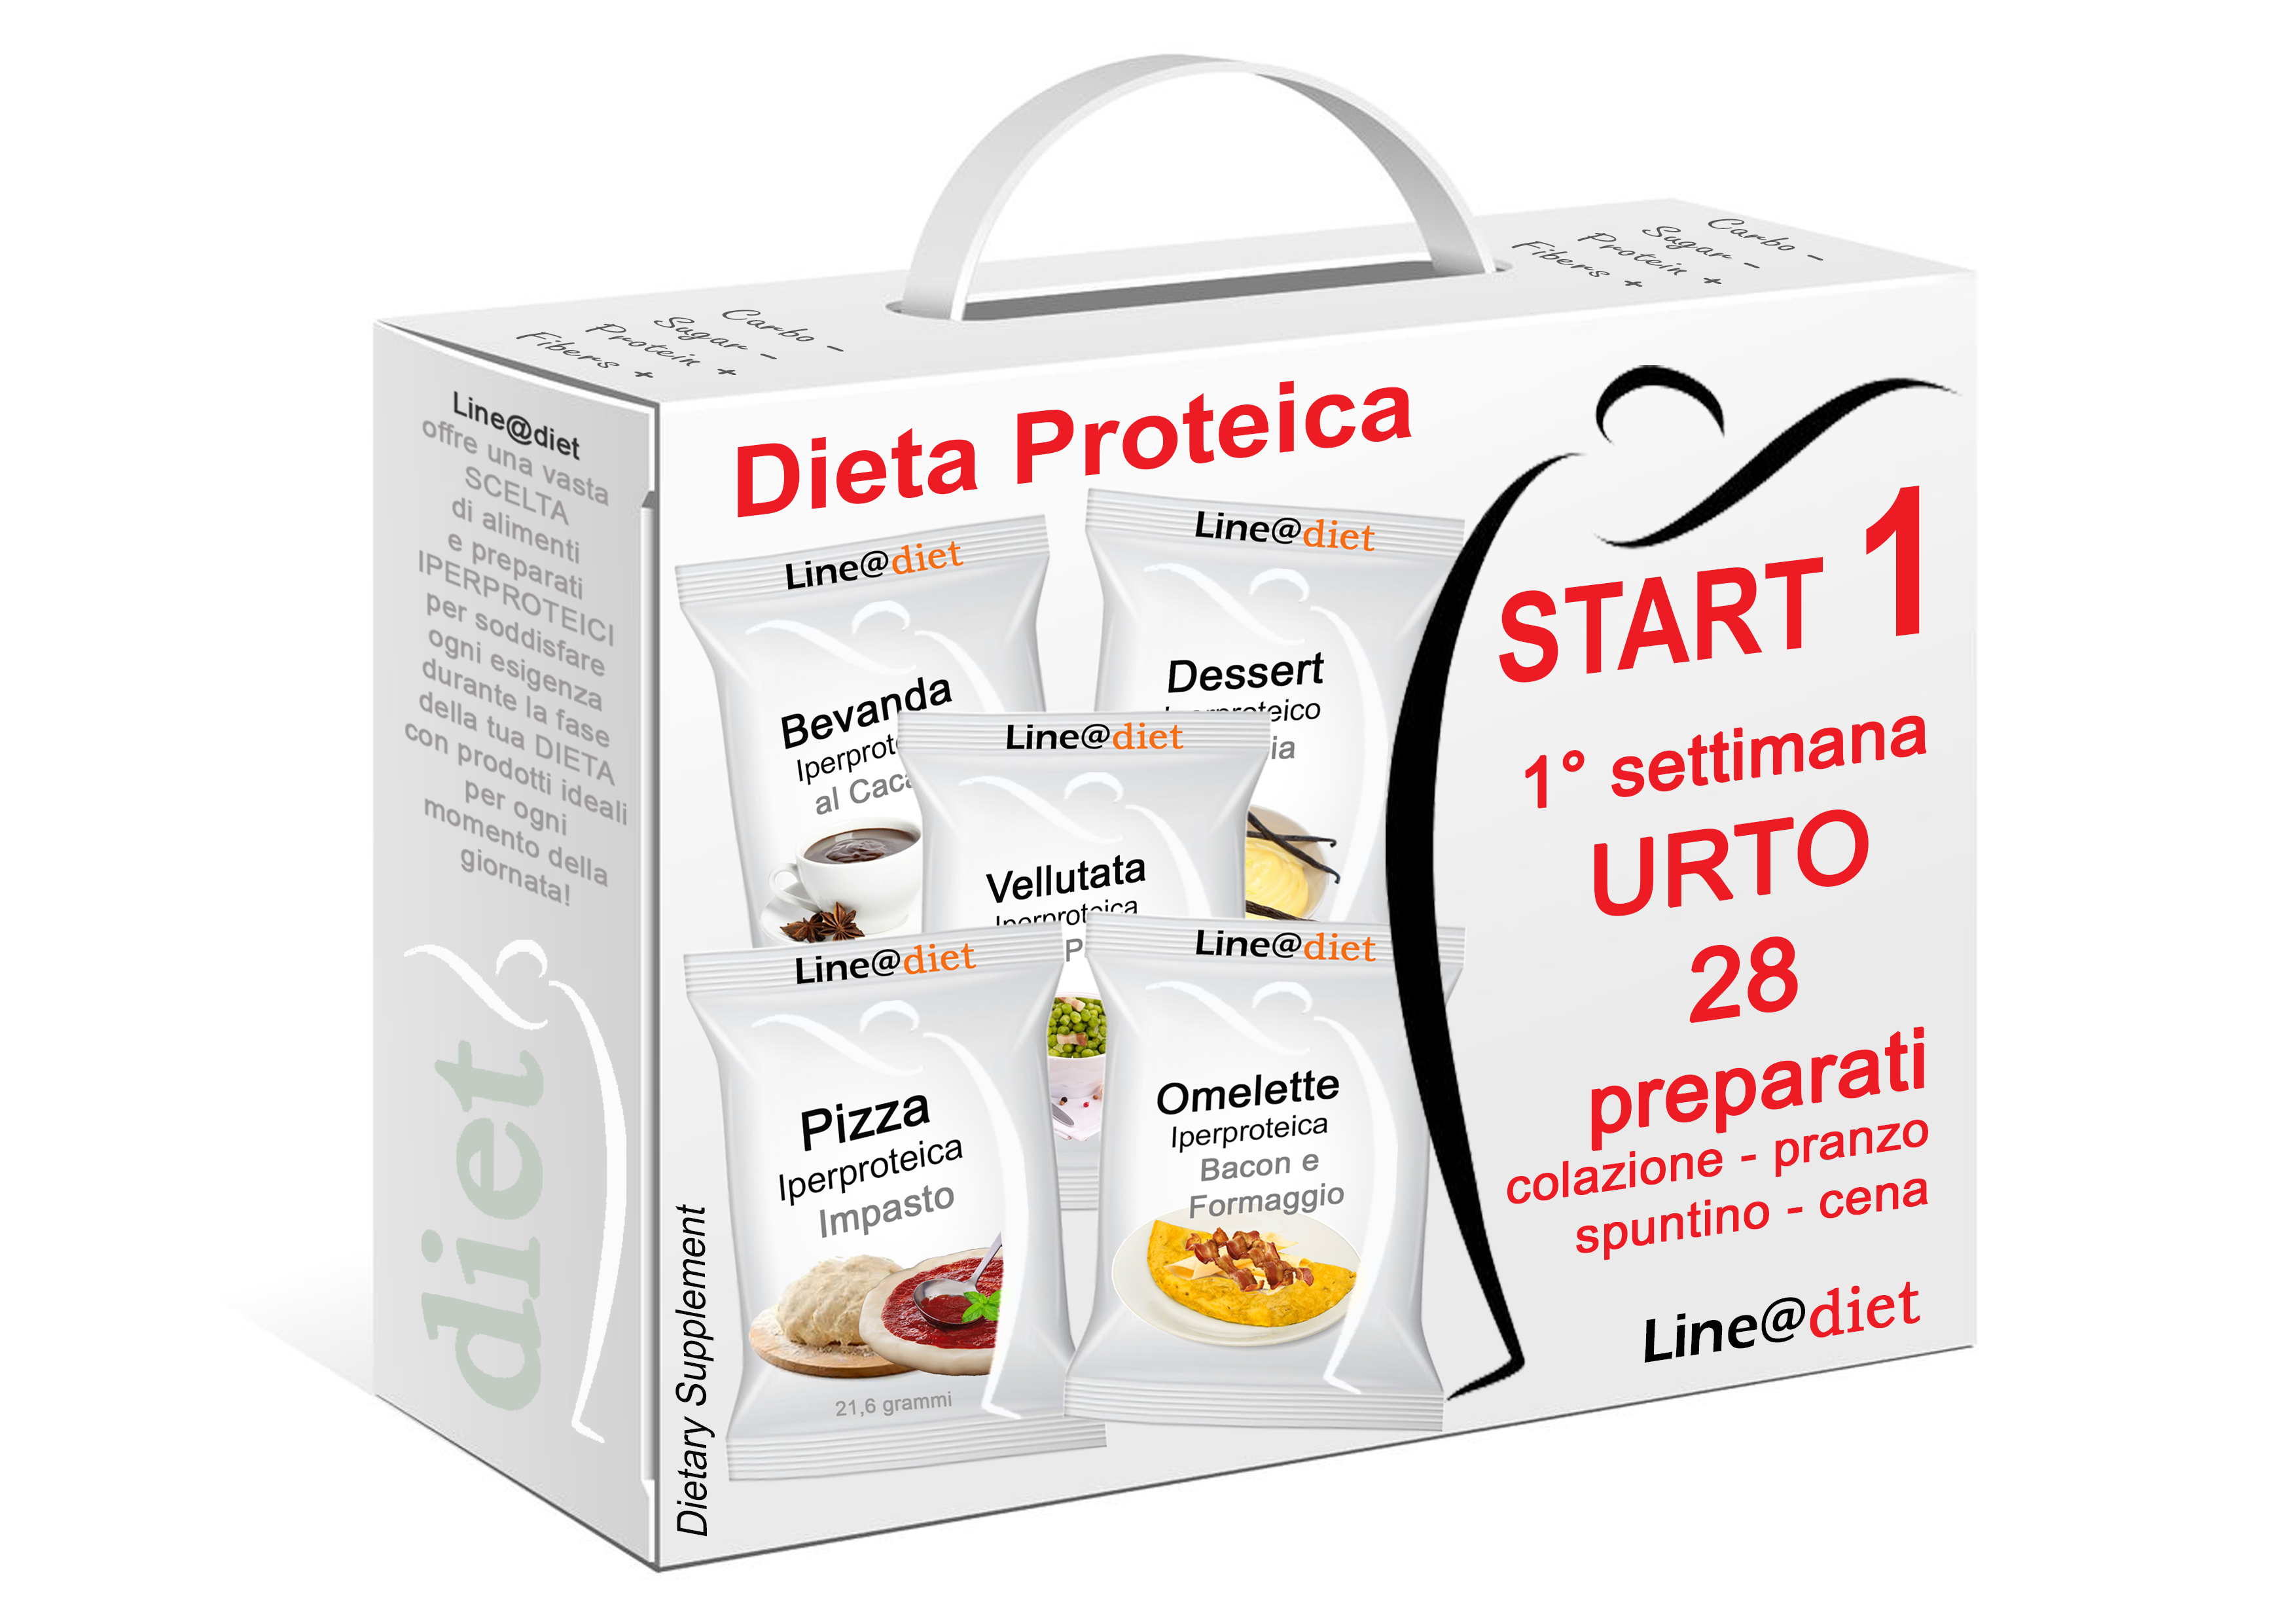 Dieta proteica adelgazar